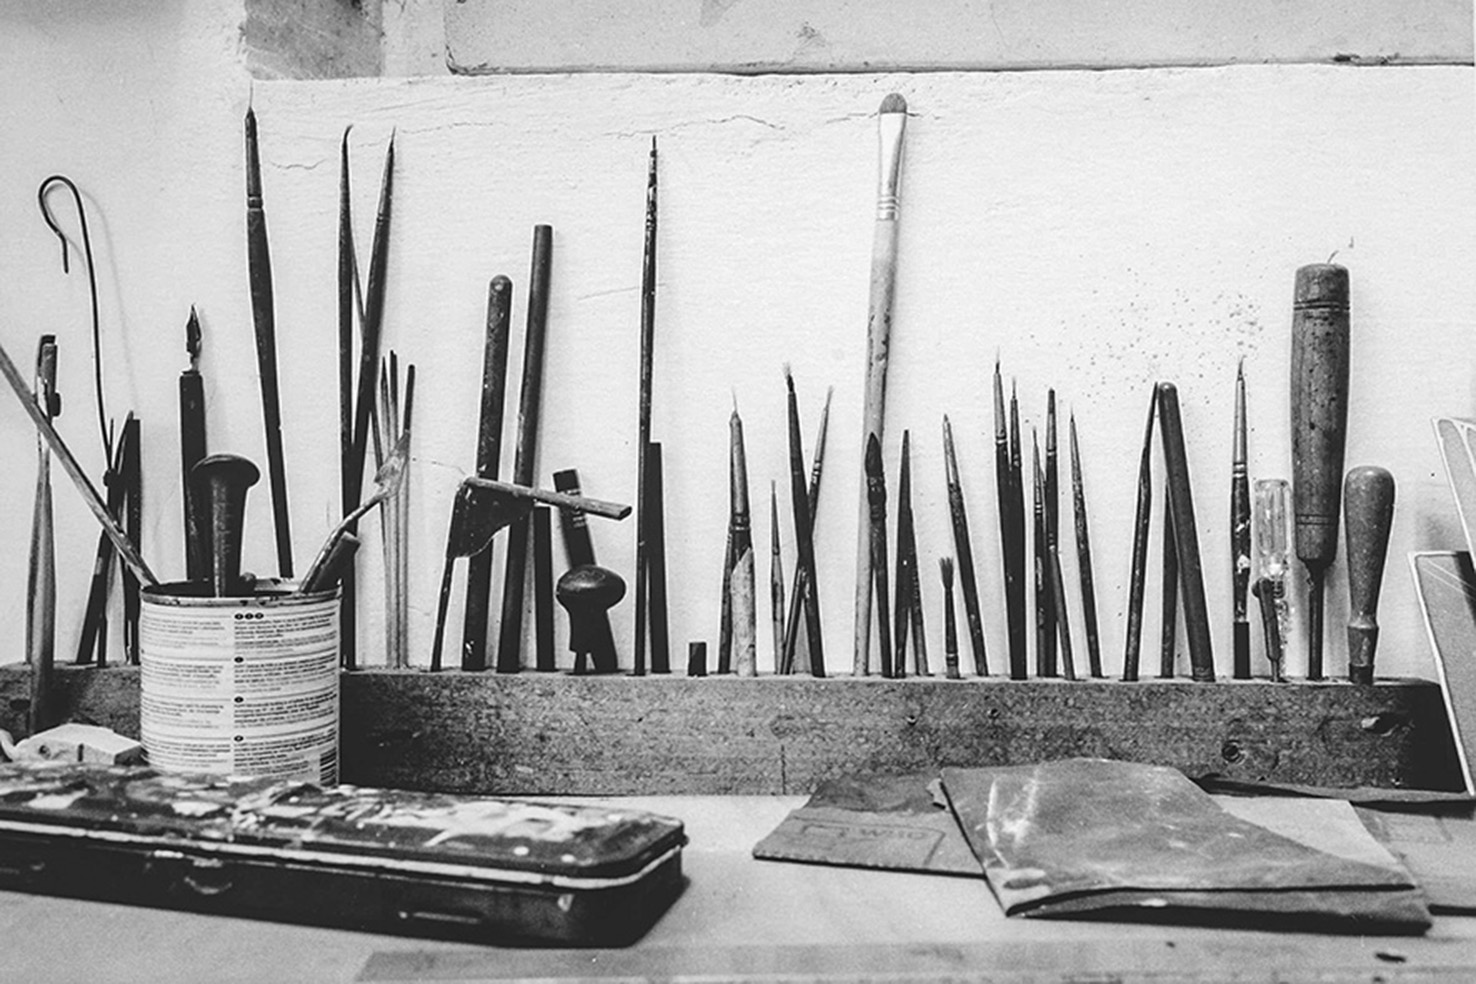 E. Obiso, 'La casa di Francesco', strumenti per l'incisione, Torino, 2013, foto b/n © l'autore / G. Costa / Archivio Casorati